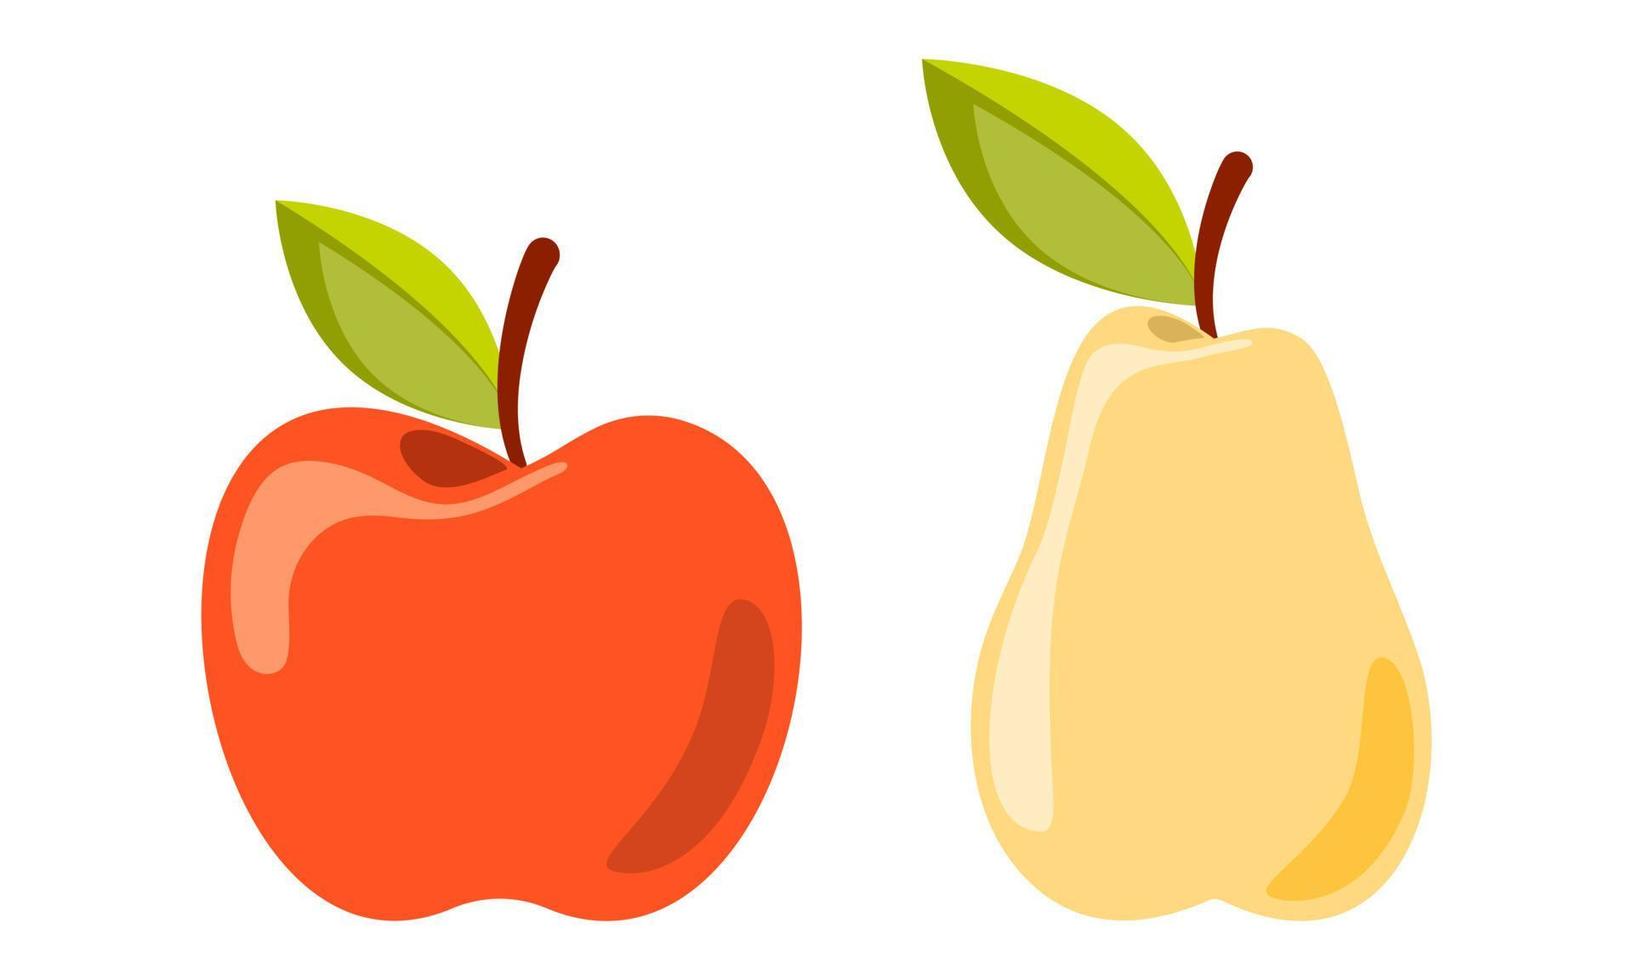 pera madura amarilla y manzana roja con hoja verde aislada en fondo blanco. Ilustración de vector de fruta orgánica sabrosa y saludable. clipart para decoración presentación de alimentos, scrapbooking, textil.